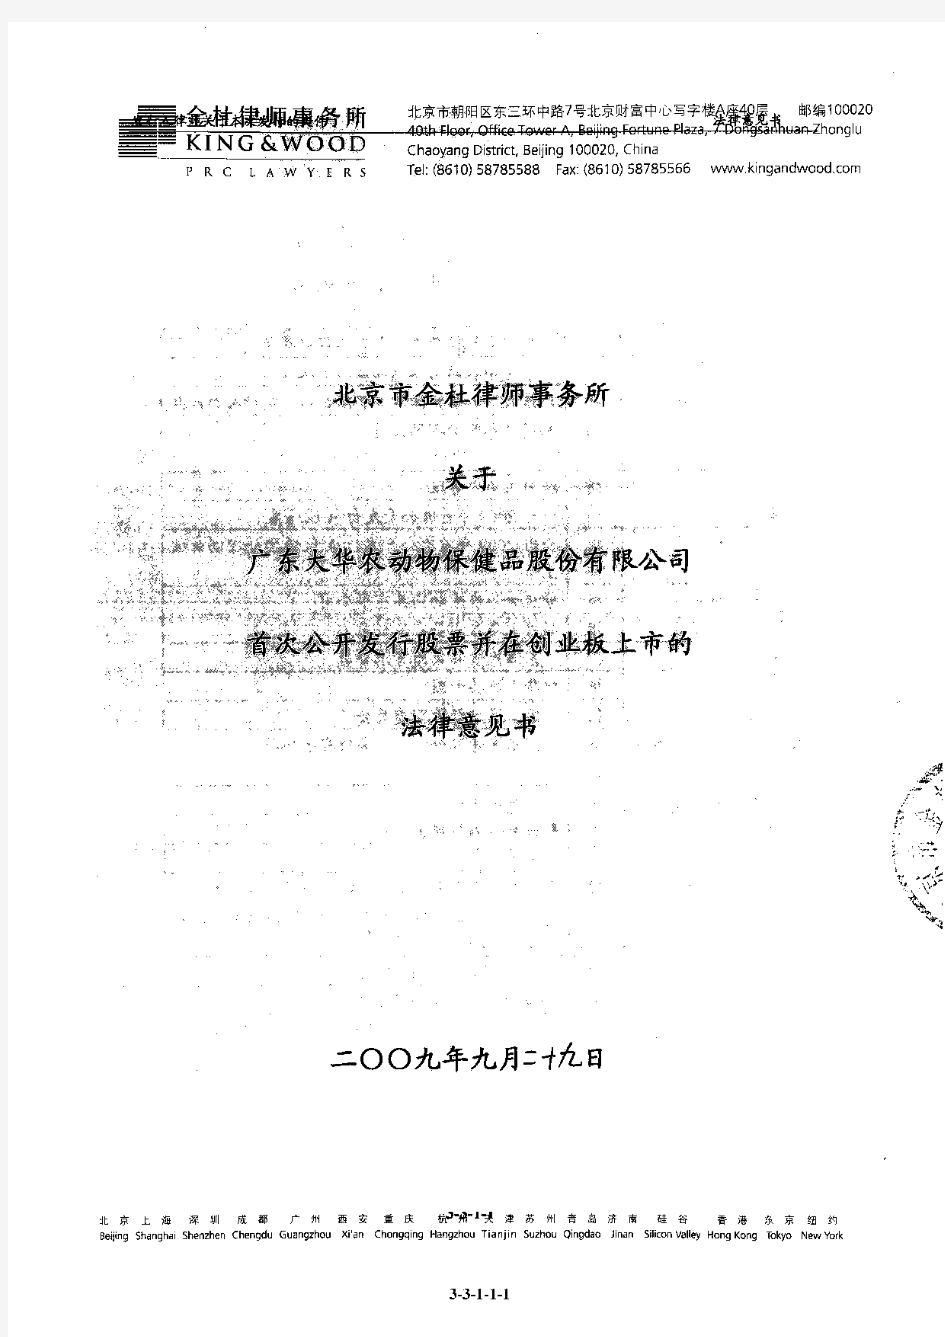 大华农：北京市金杜律师事务所关于公司首次公开发行股票并在创业板上市的法律意见书 2011-02-17